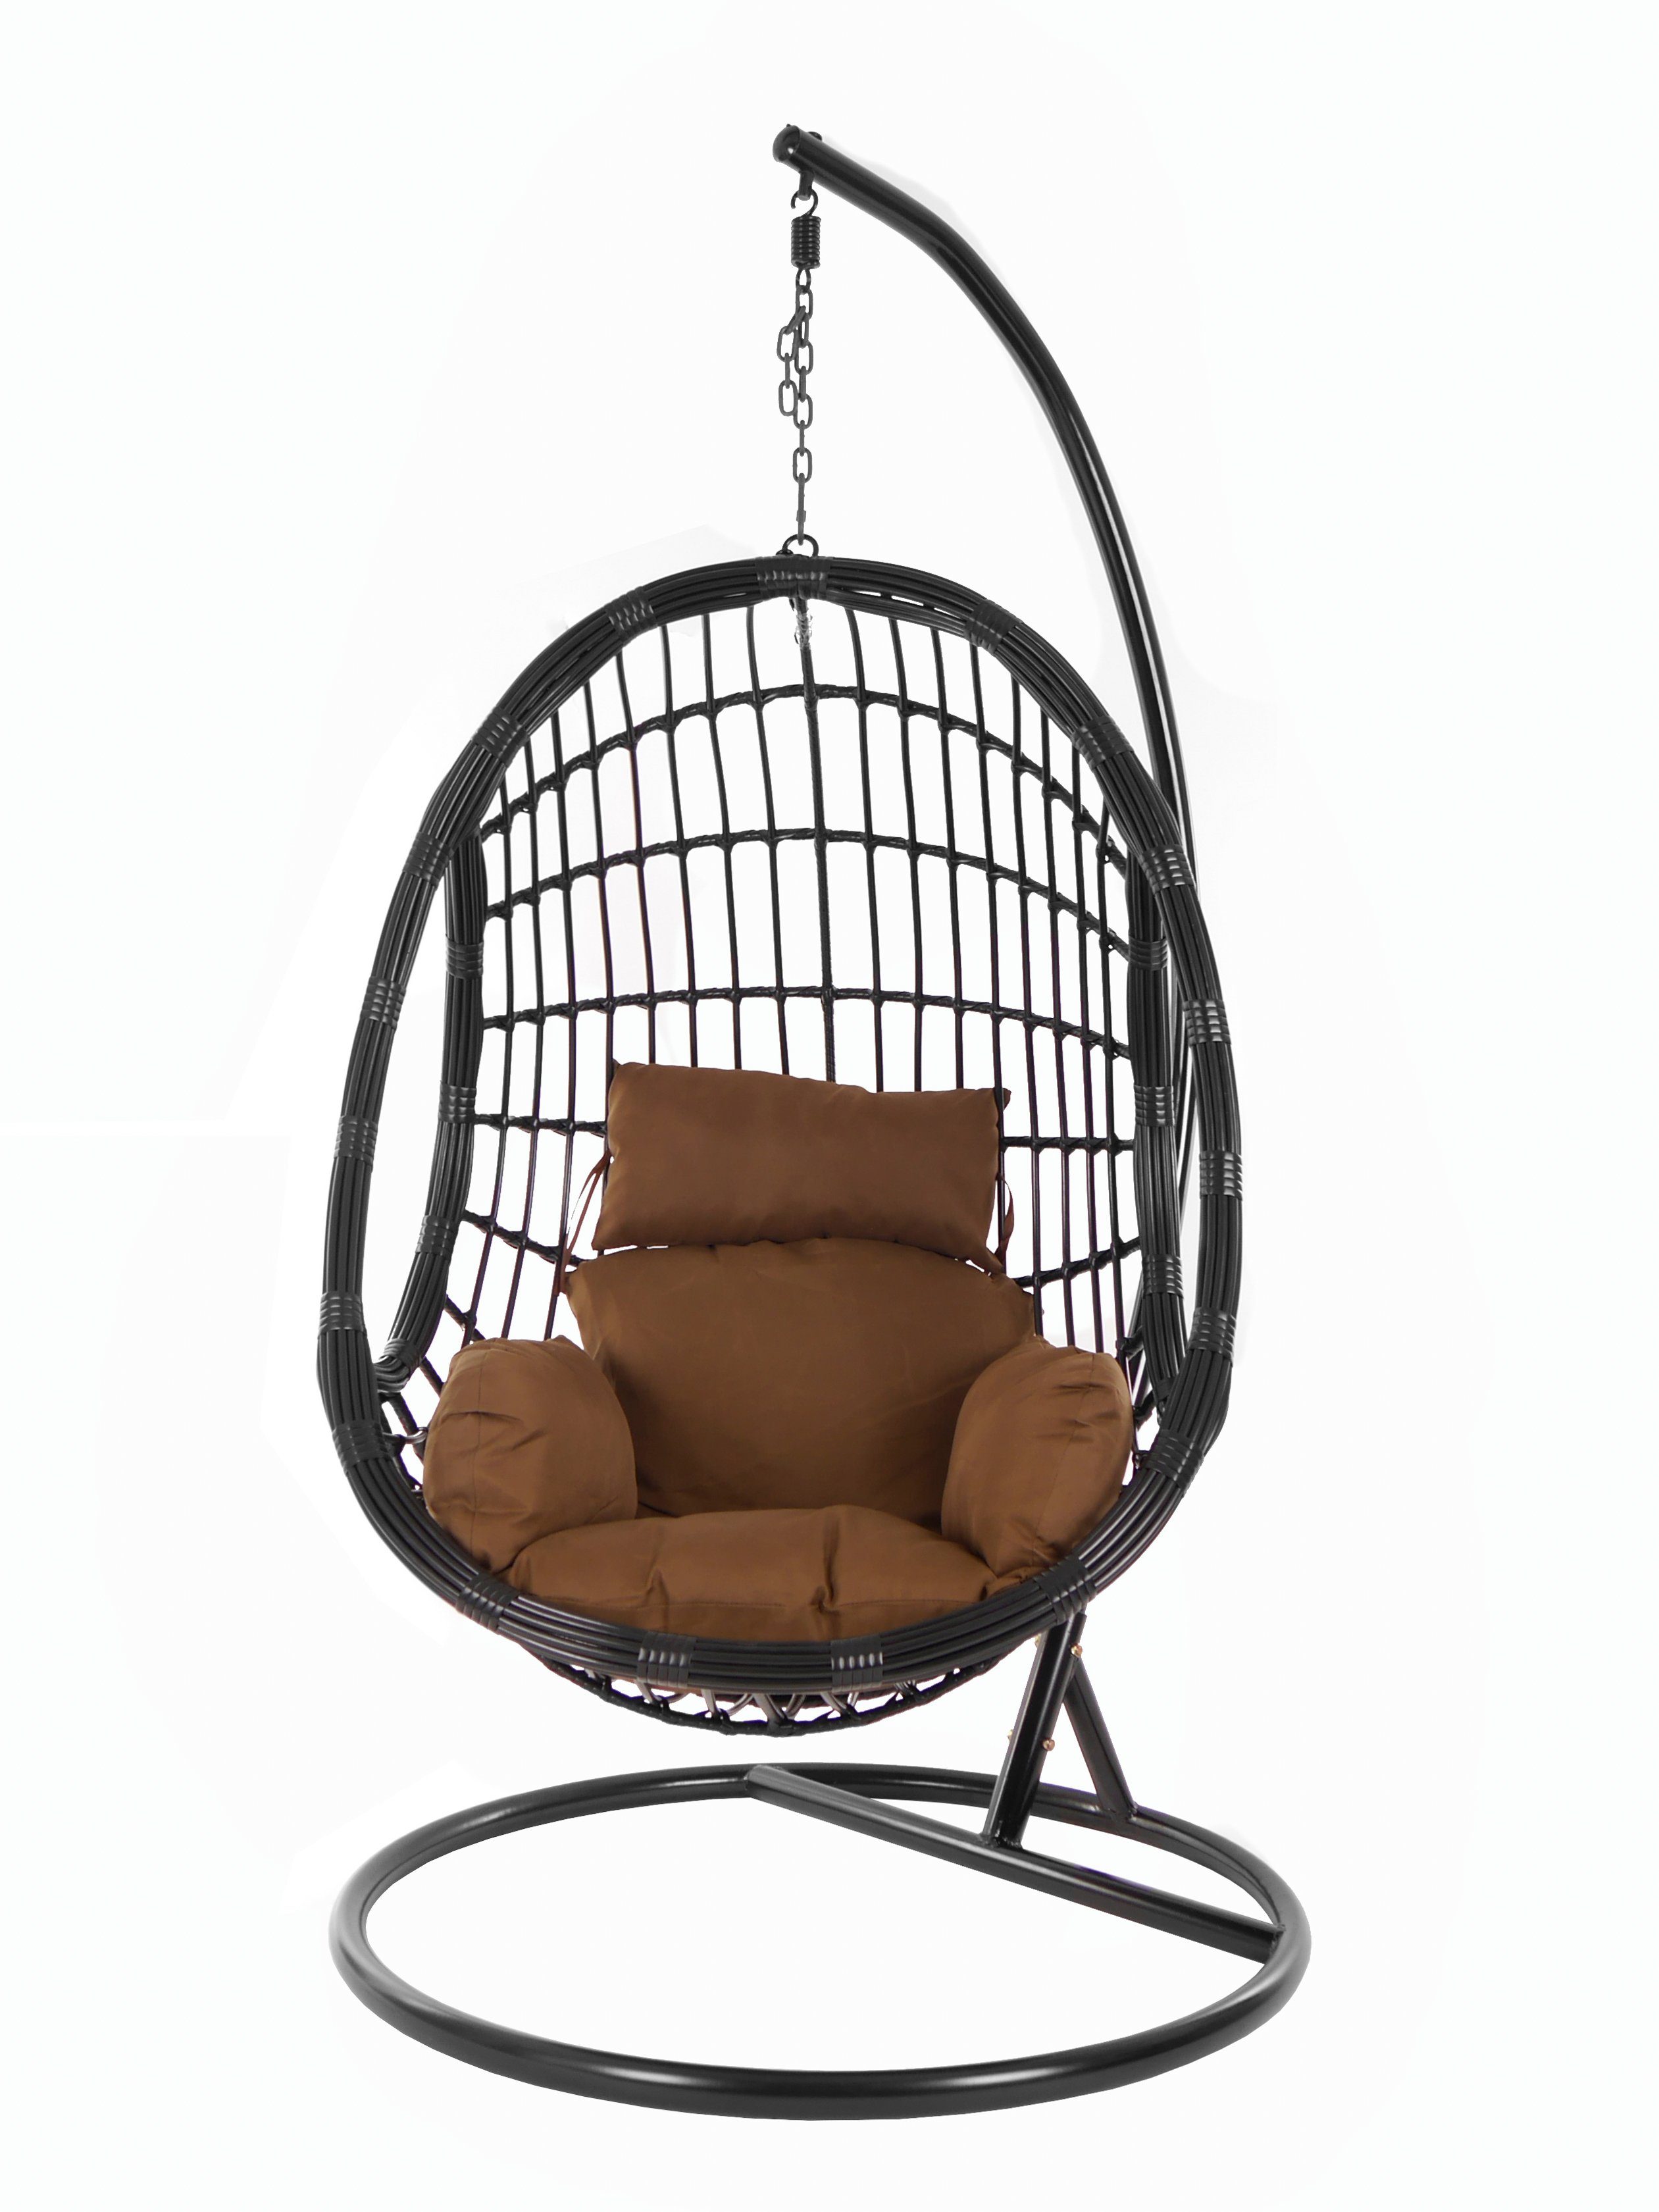 KIDEO Hängesessel PALMANOVA black, Chair, Swing (7790 und Gestell chocolate) Hängesessel Nest-Kissen dunkelbraun Schwebesessel, mit Kissen